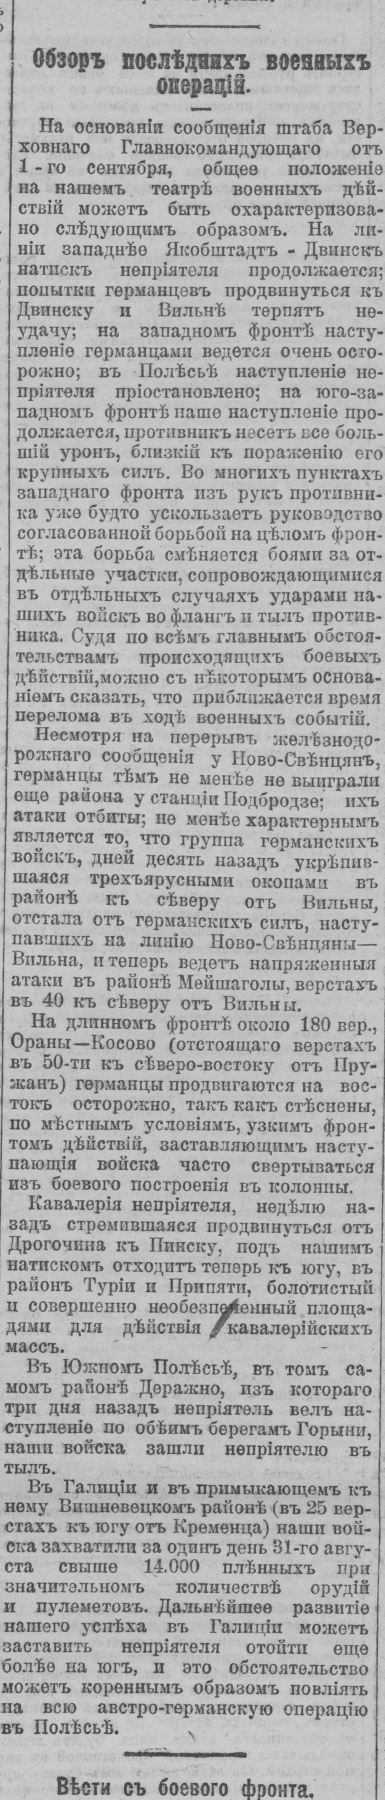 Правительственный вестник, № 193 от 02.09.1915